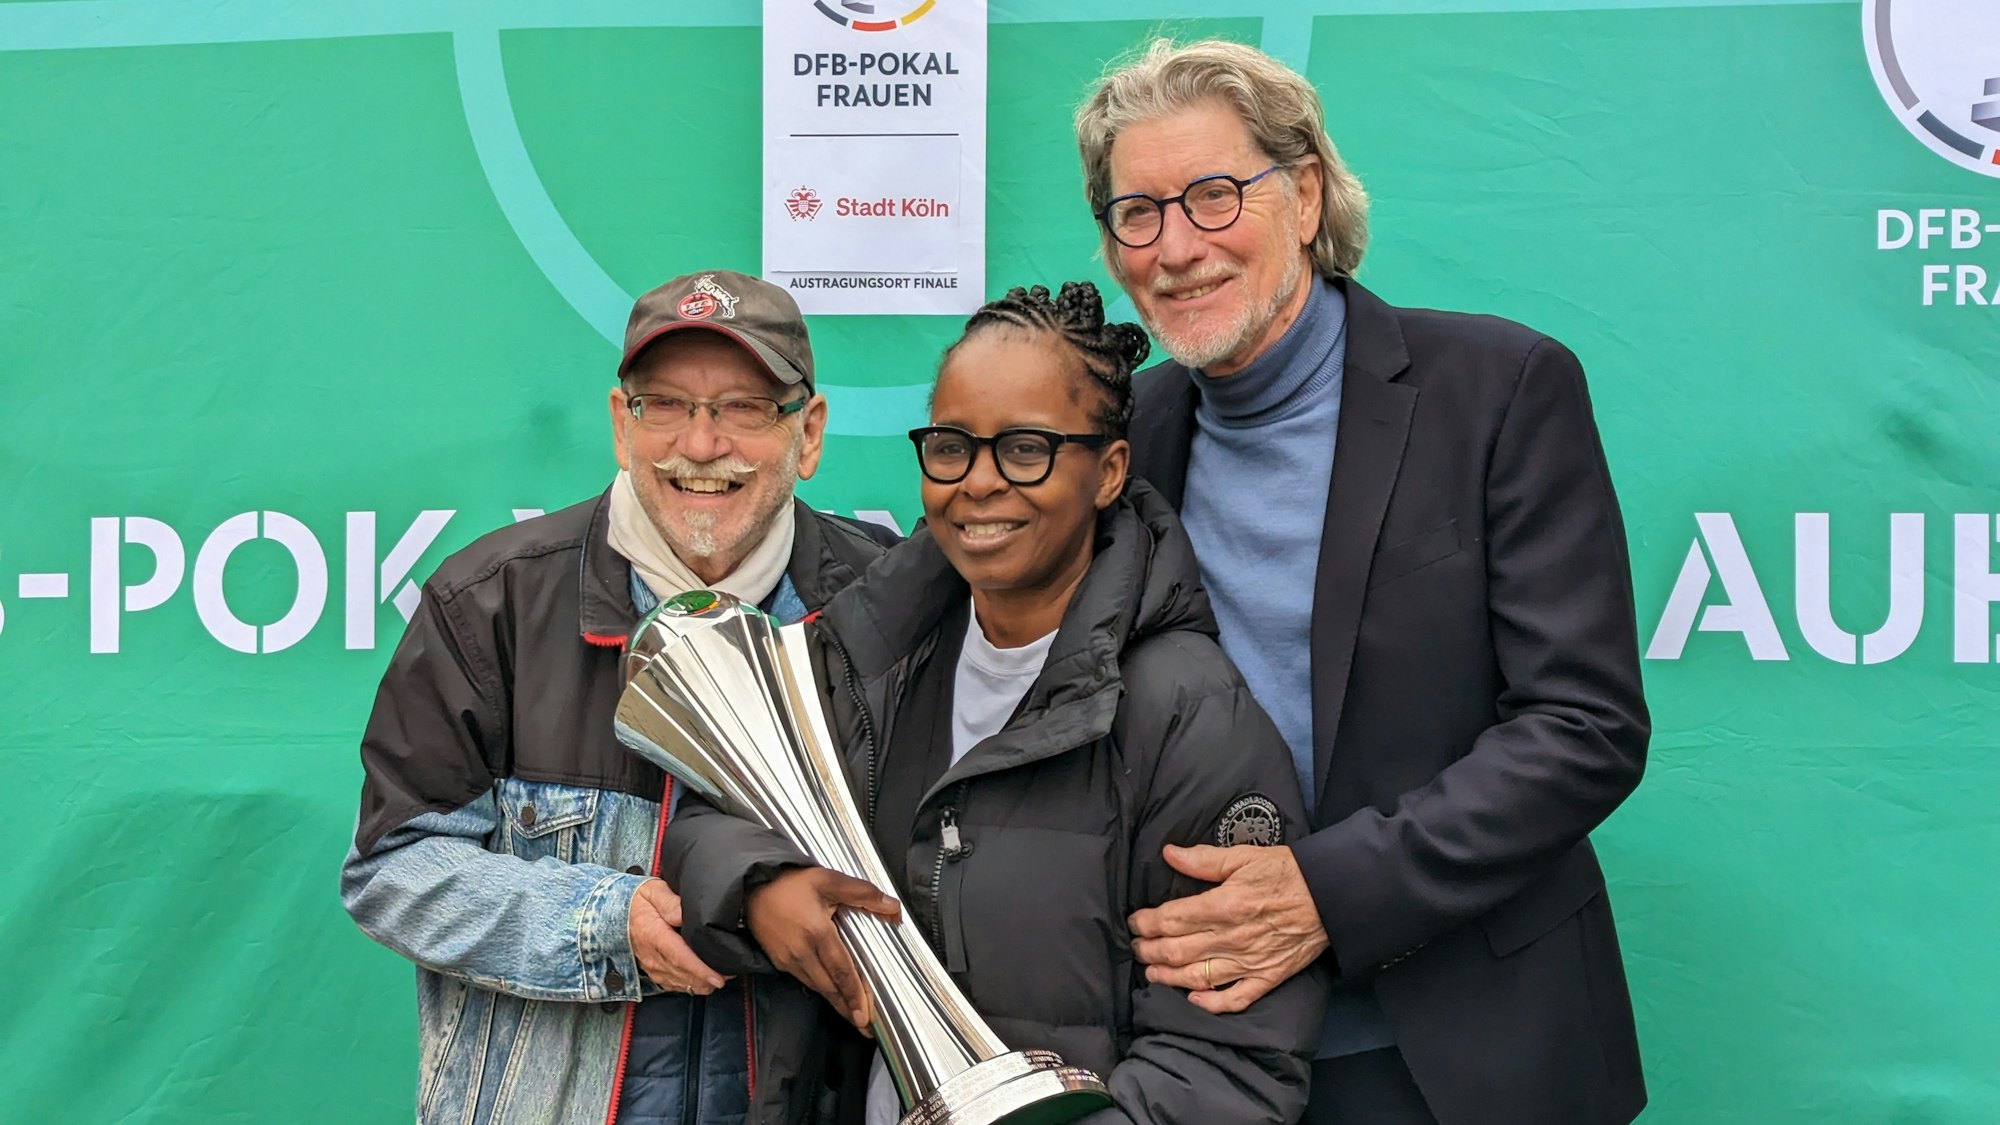 Janus Fröhlich, Shary Reeves und Toni Schumacher stehen zusammen vor einem grünen Hintergrund. Shary Reeves hat den Pokal in der Hand.